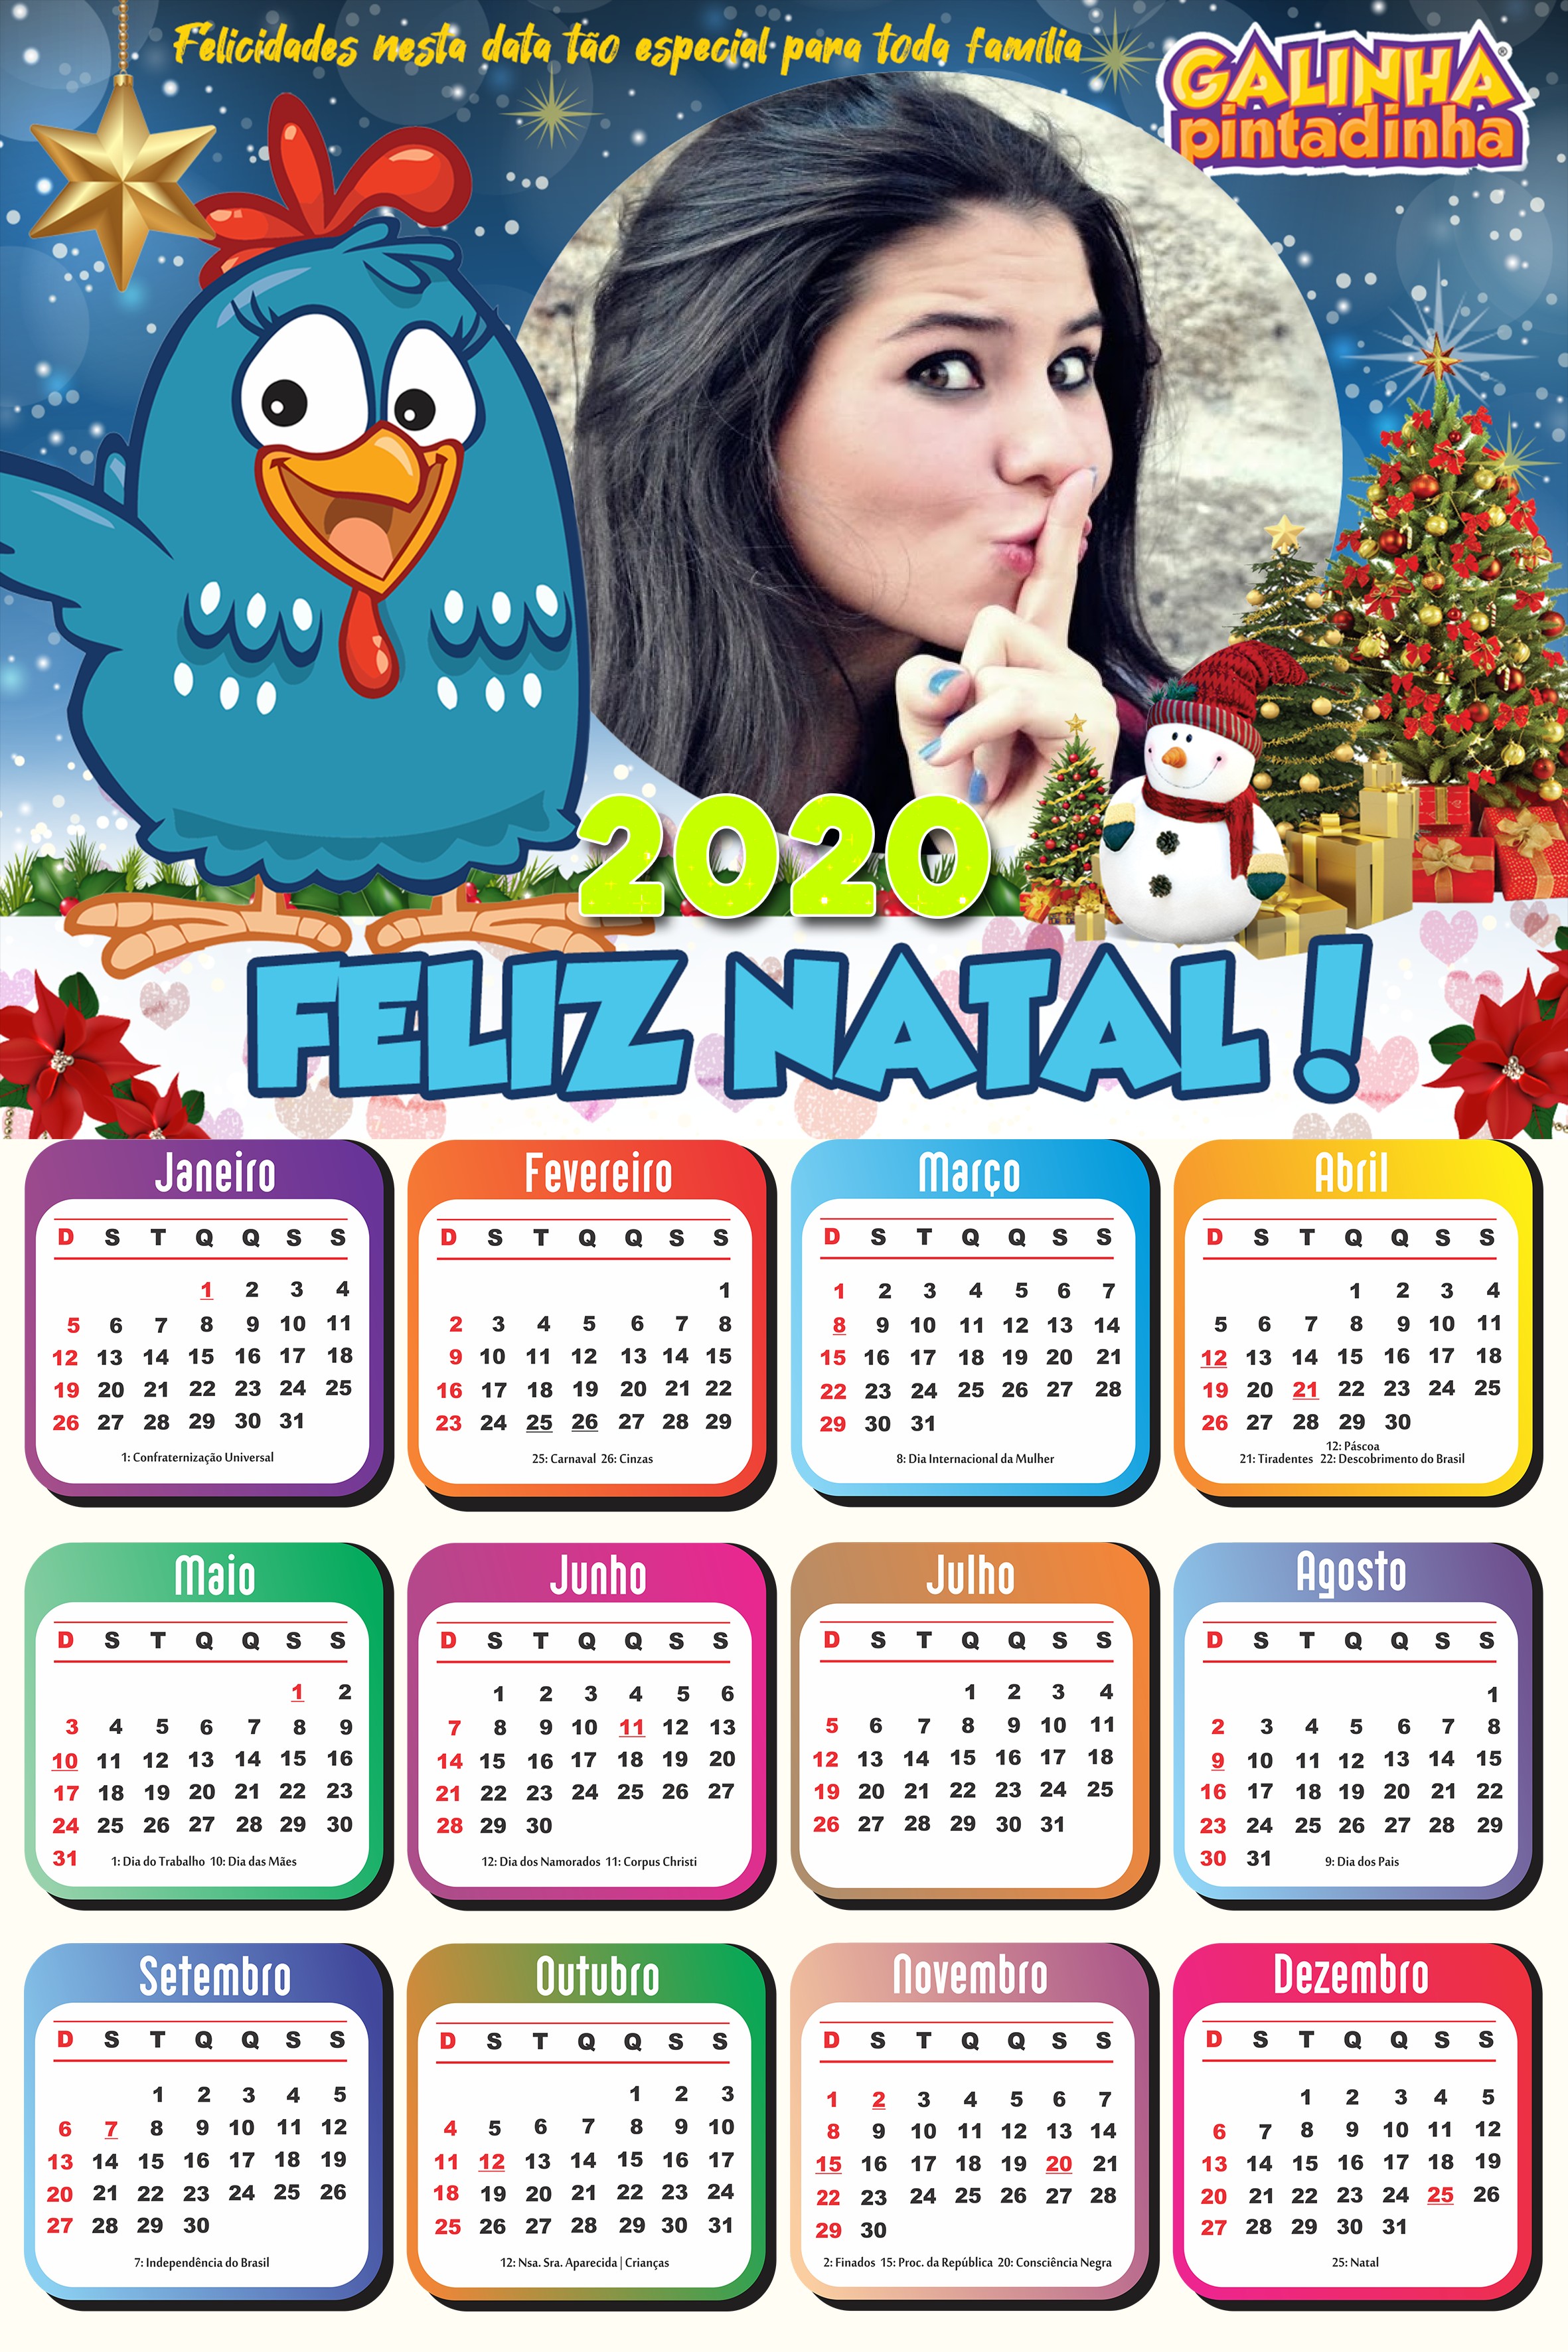 foto-montagem-com-calendario-infantil-2020-da-galinha-pintadinha-feliz-natal